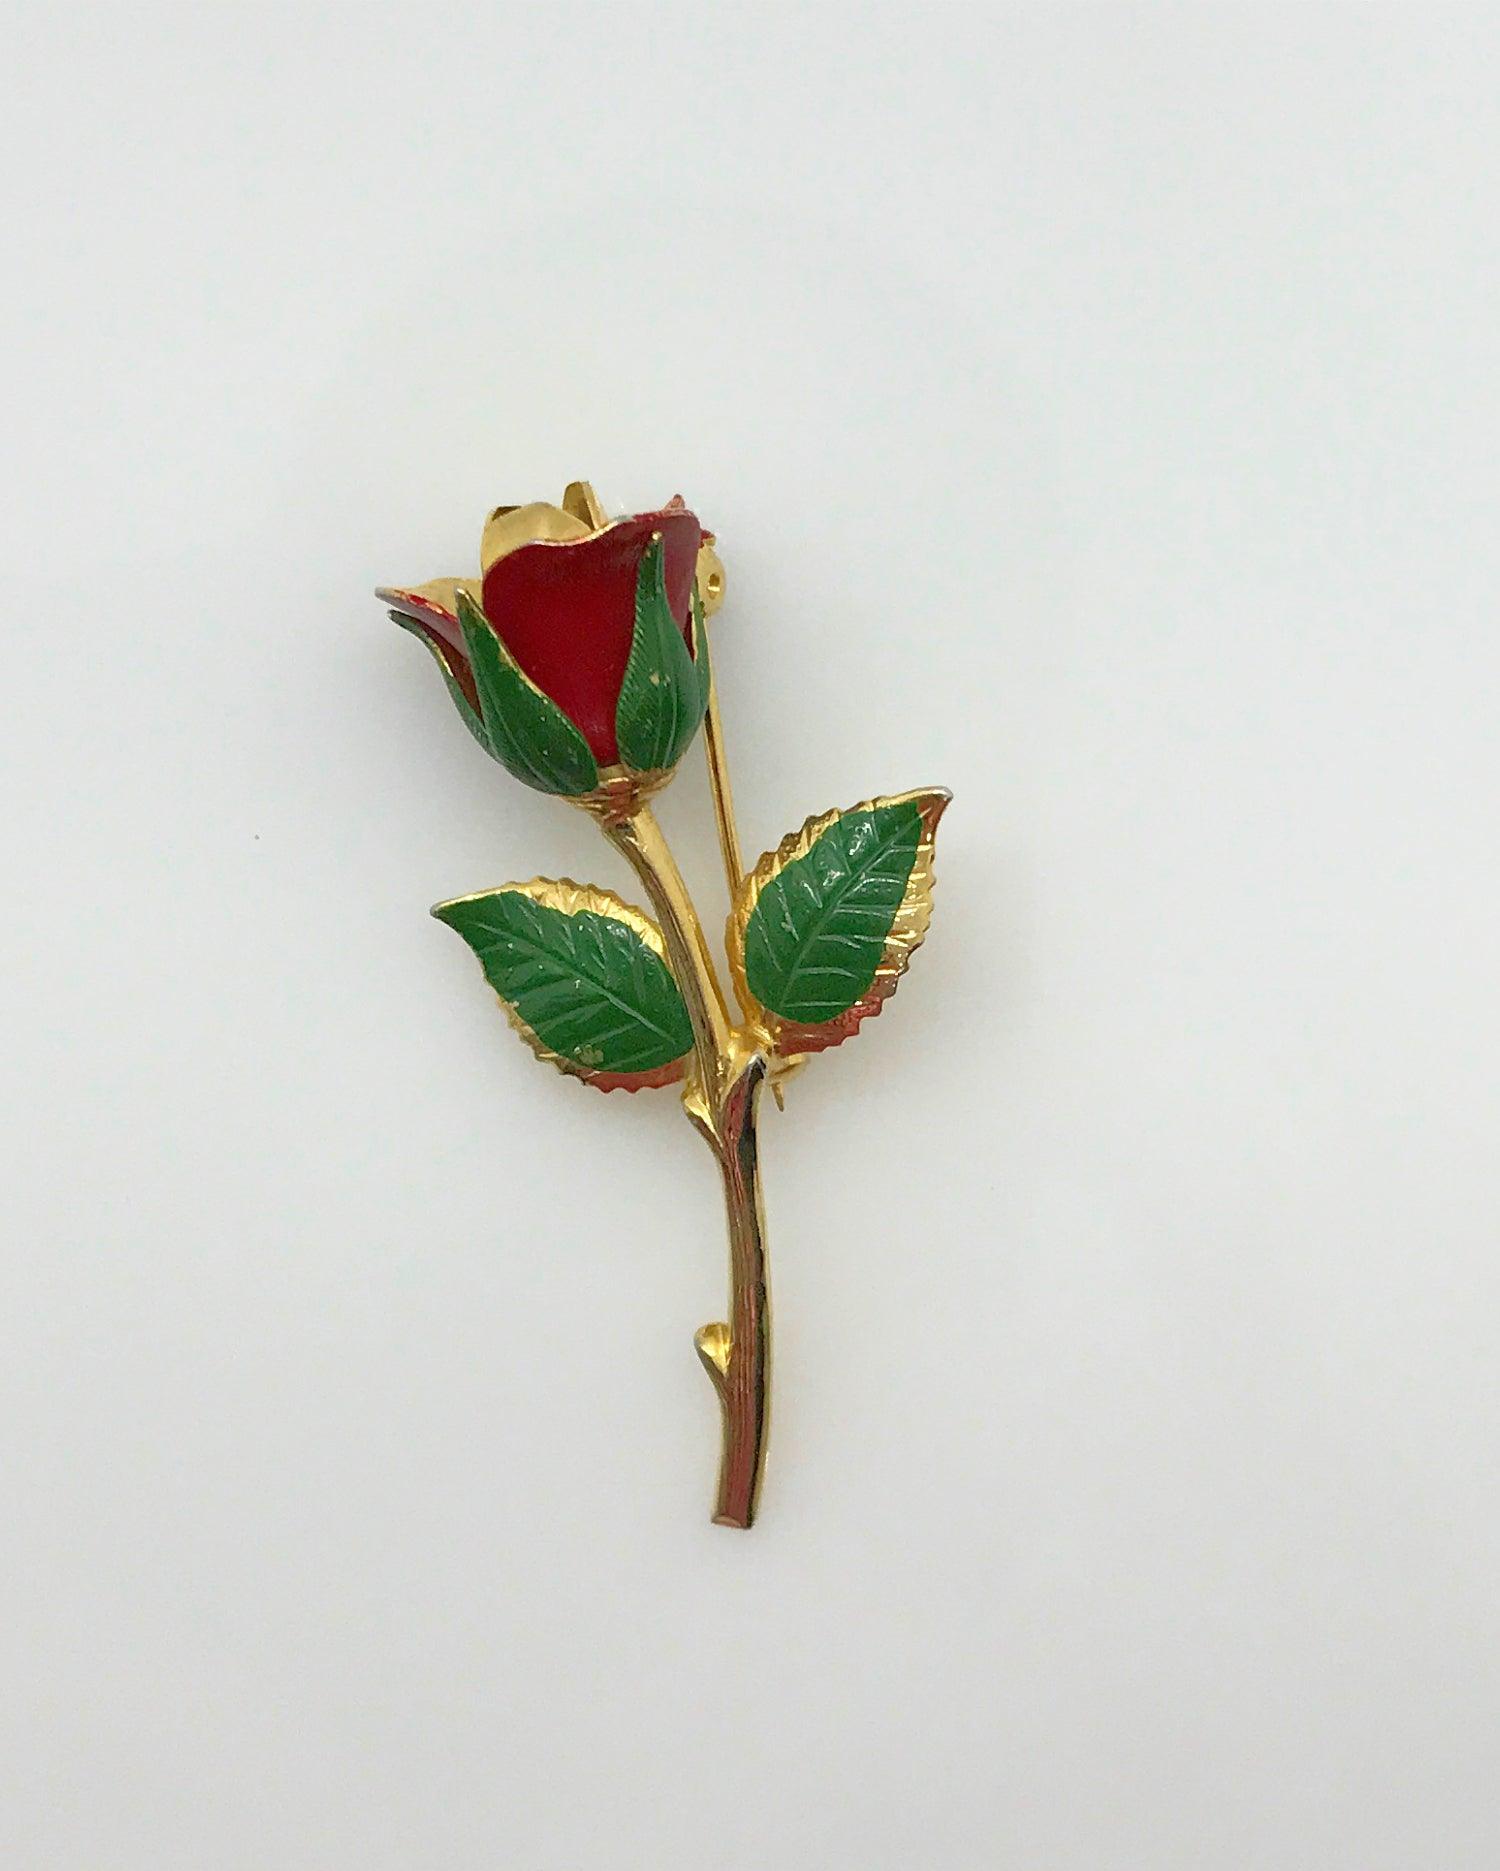 Small Vintage Red Rose Bud Brooch - Lamoree’s Vintage